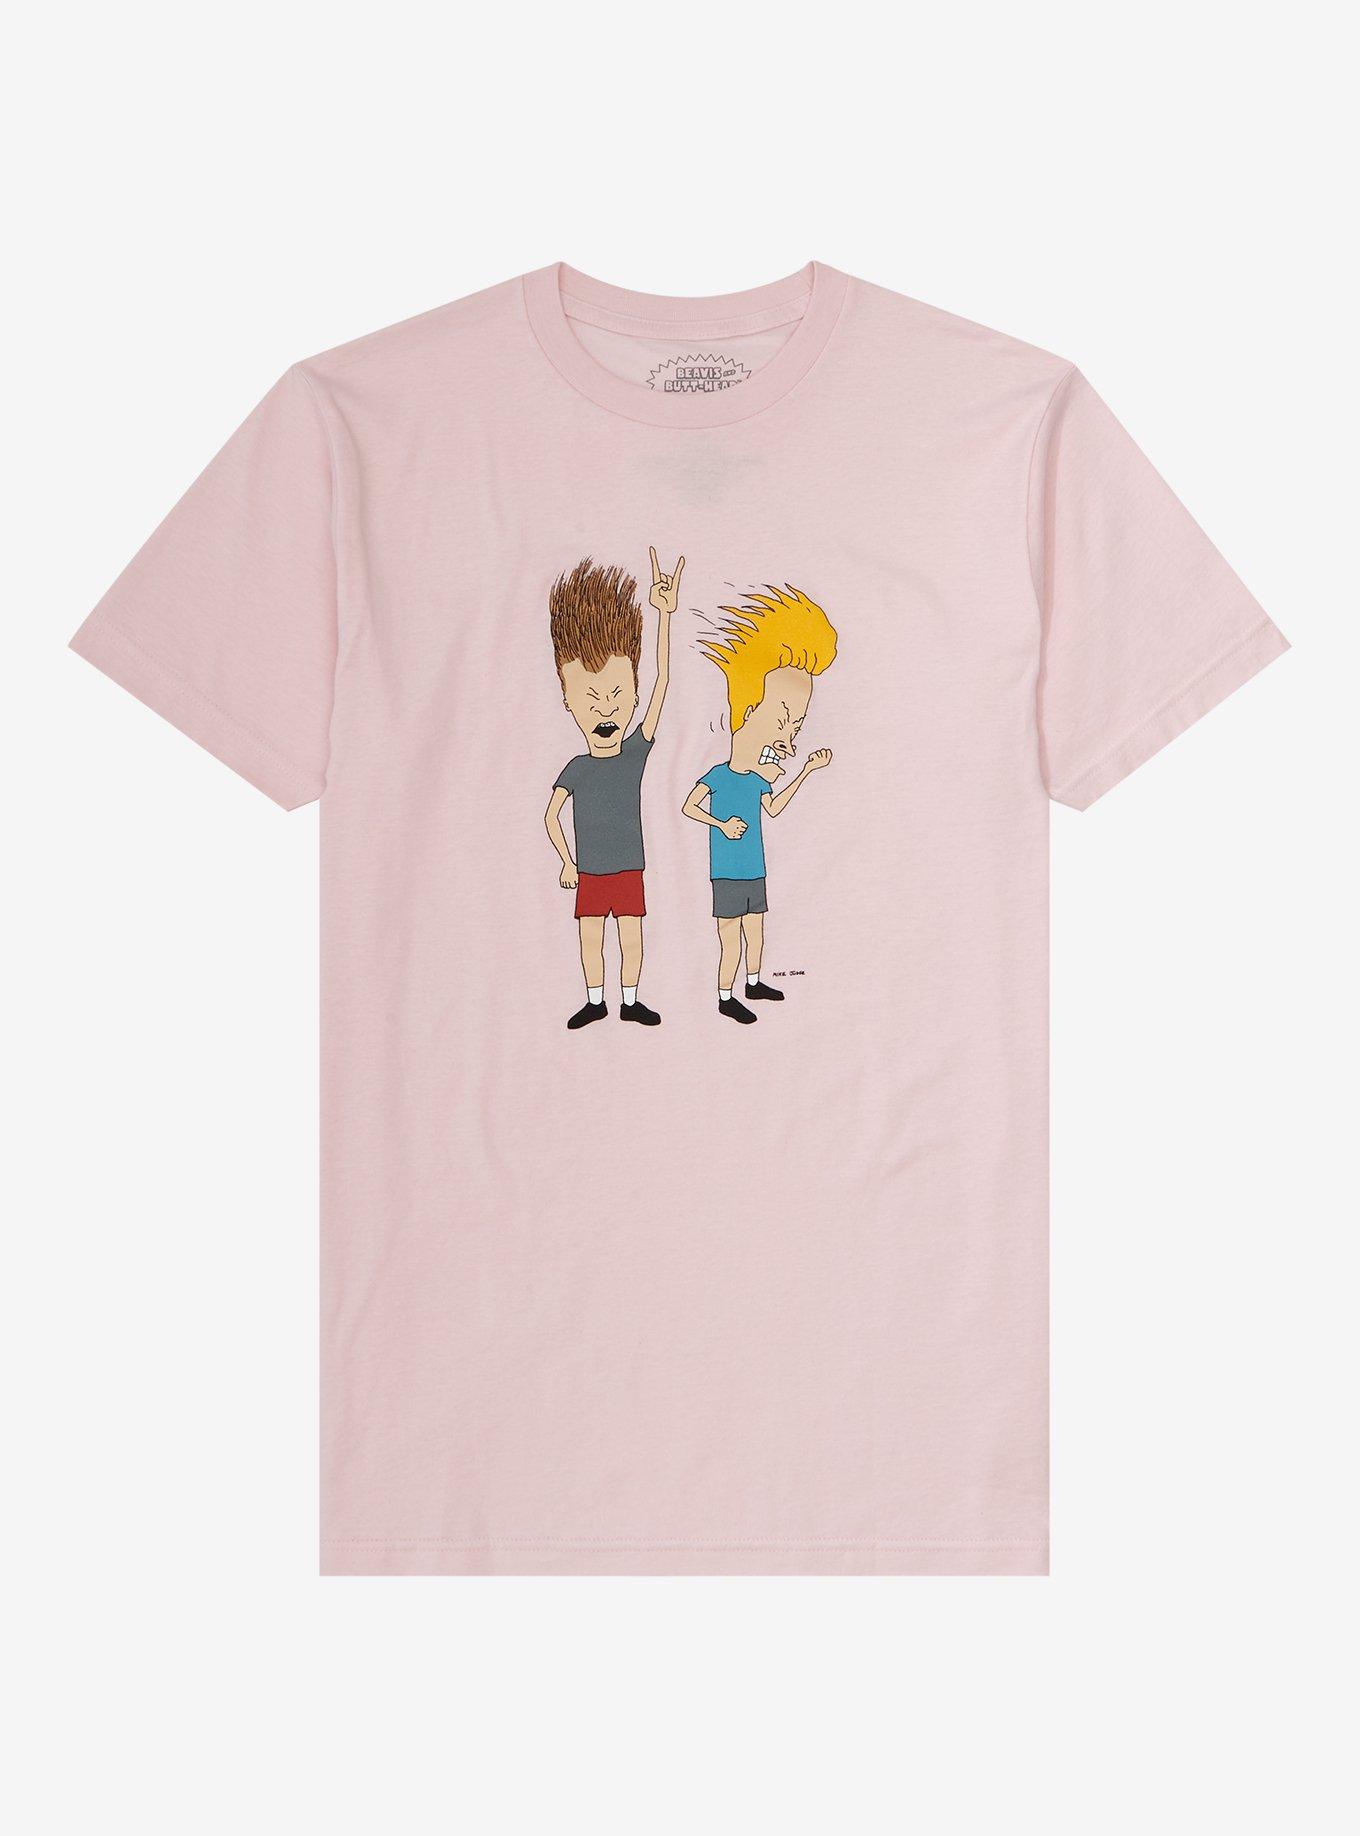 Cat Braves Name Vintage Retro Gift Men Women Boy Girl T-Shirt